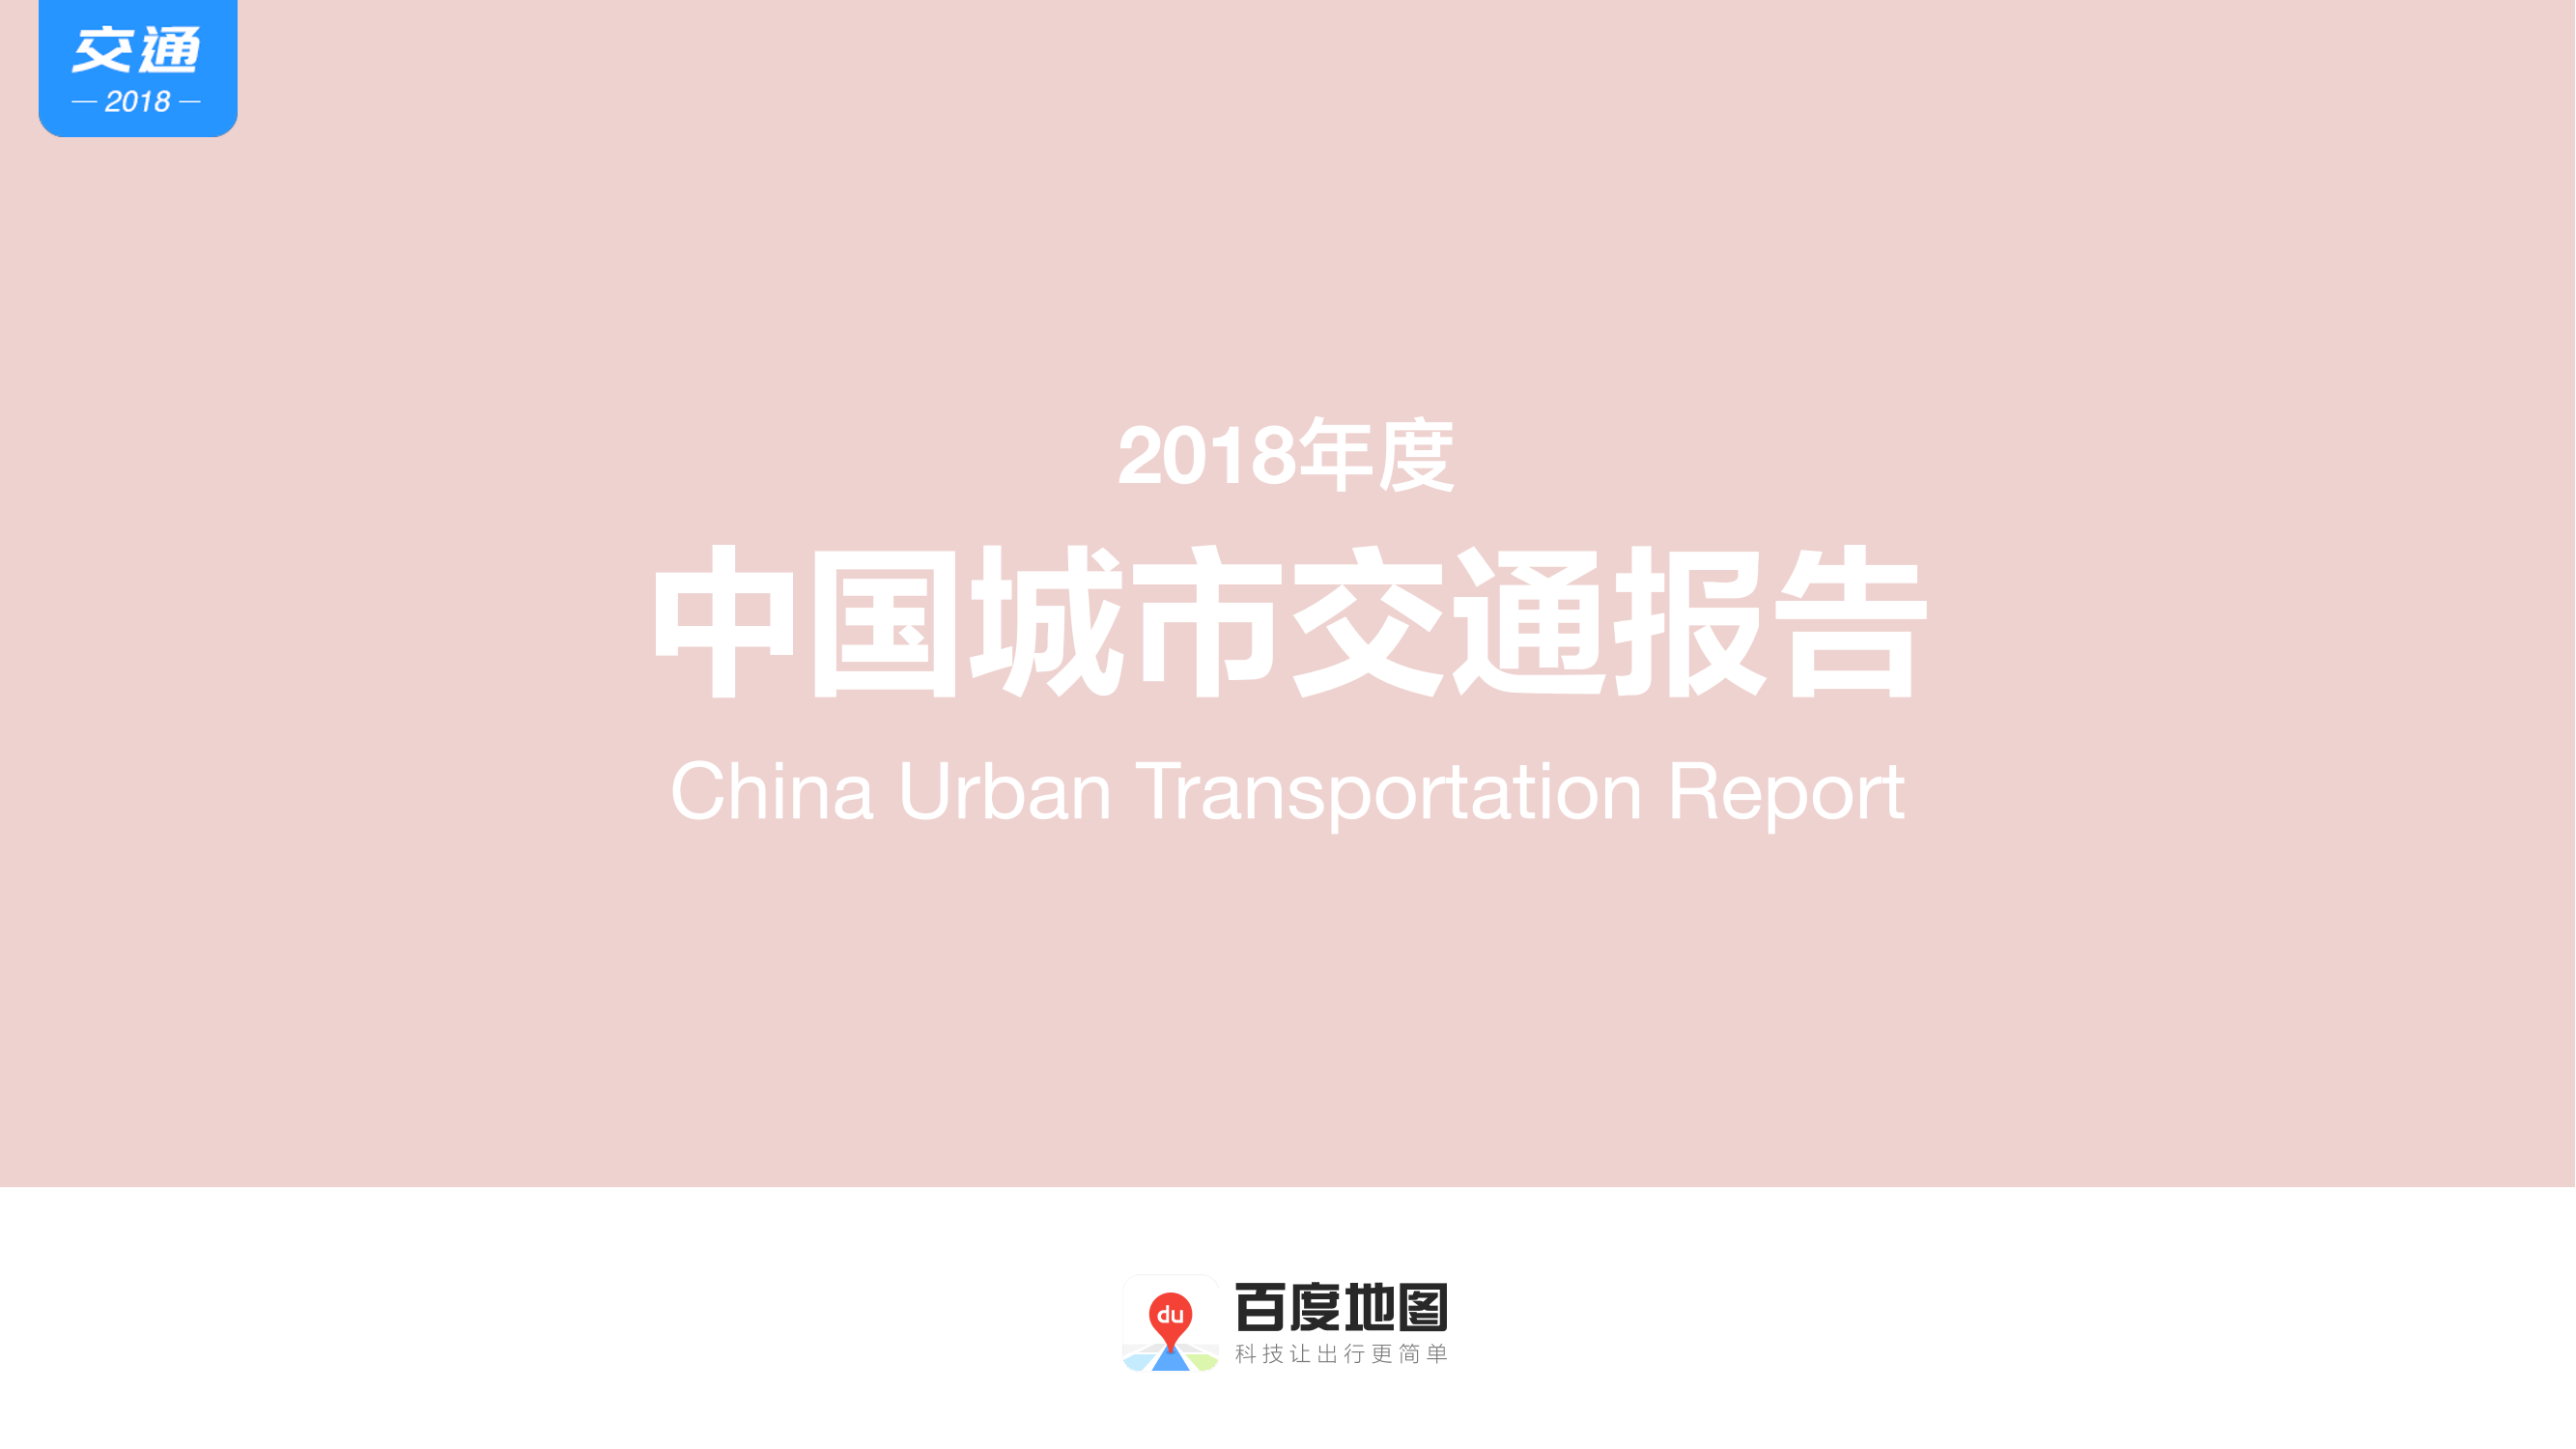 2018年度中国城市交通报告-百度地图-2019.1-81页2018年度中国城市交通报告-百度地图-2019.1-81页_1.png